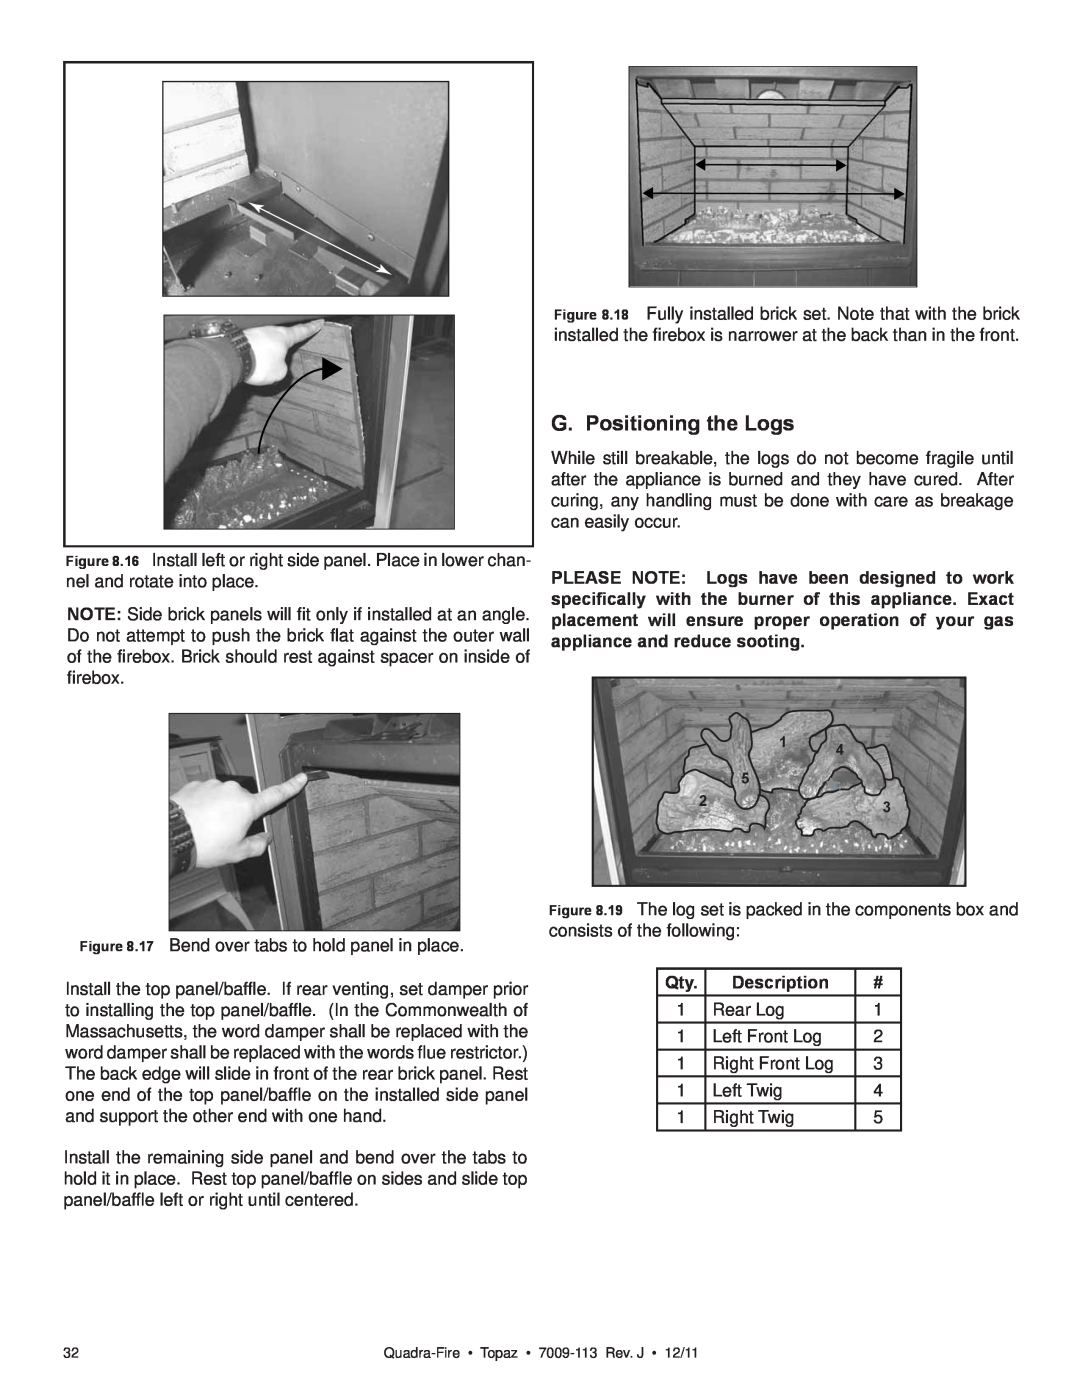 OmniTek 839-1340, 839-1290, 839-1320 owner manual G. Positioning the Logs, Description 